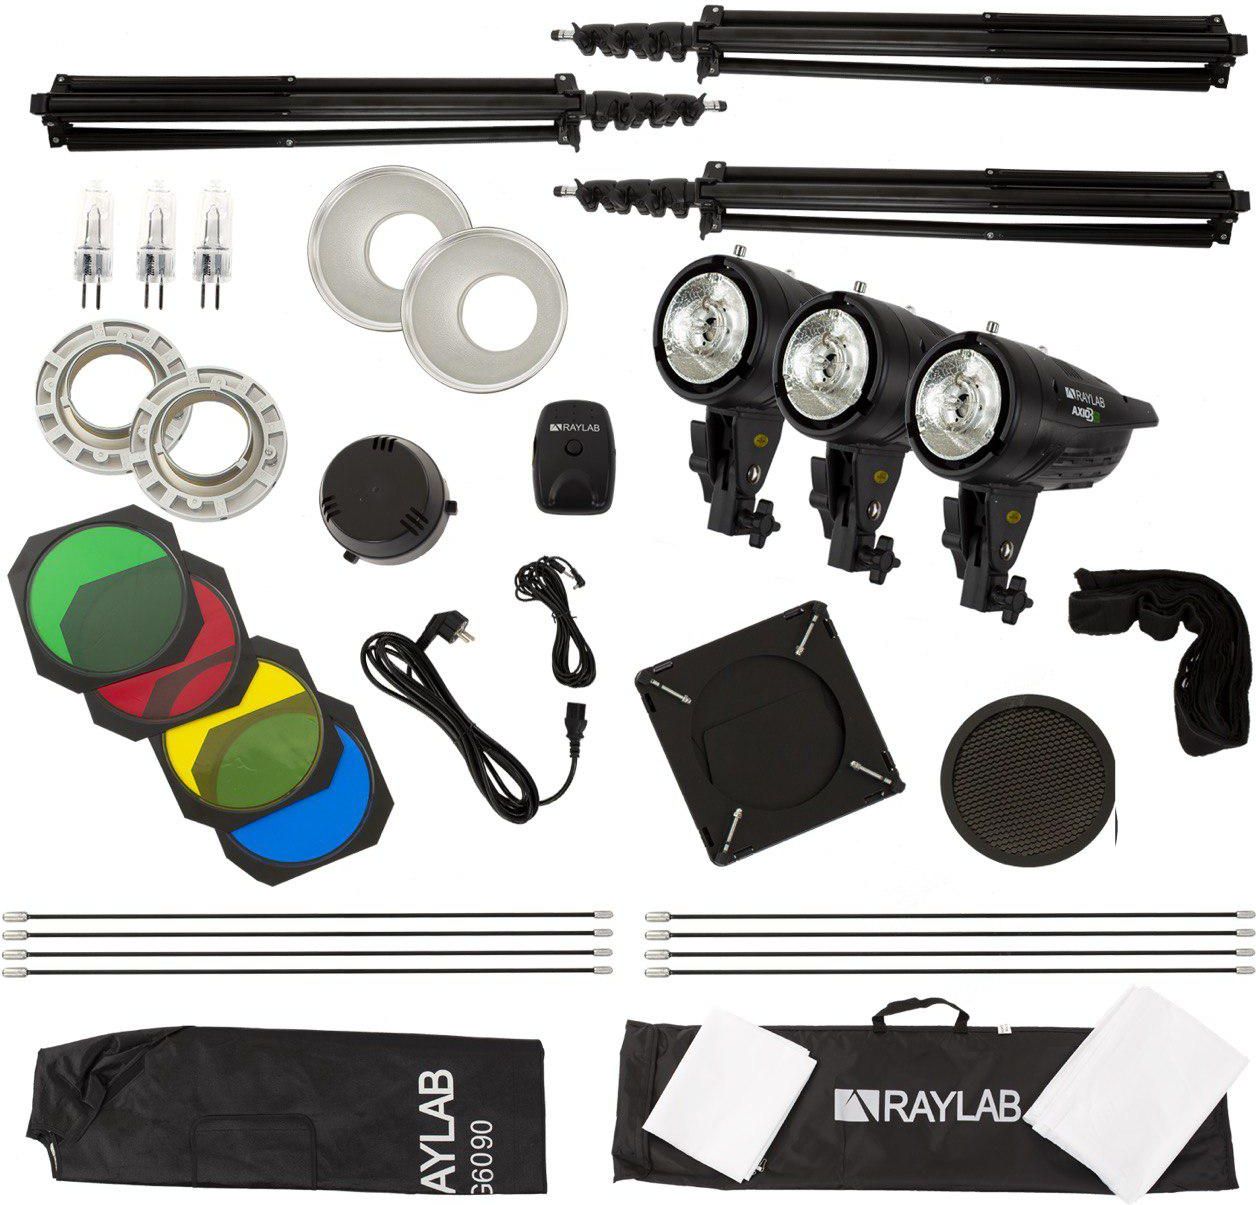     Raylab Axio III 300 Creative Kit   Ultra-mart